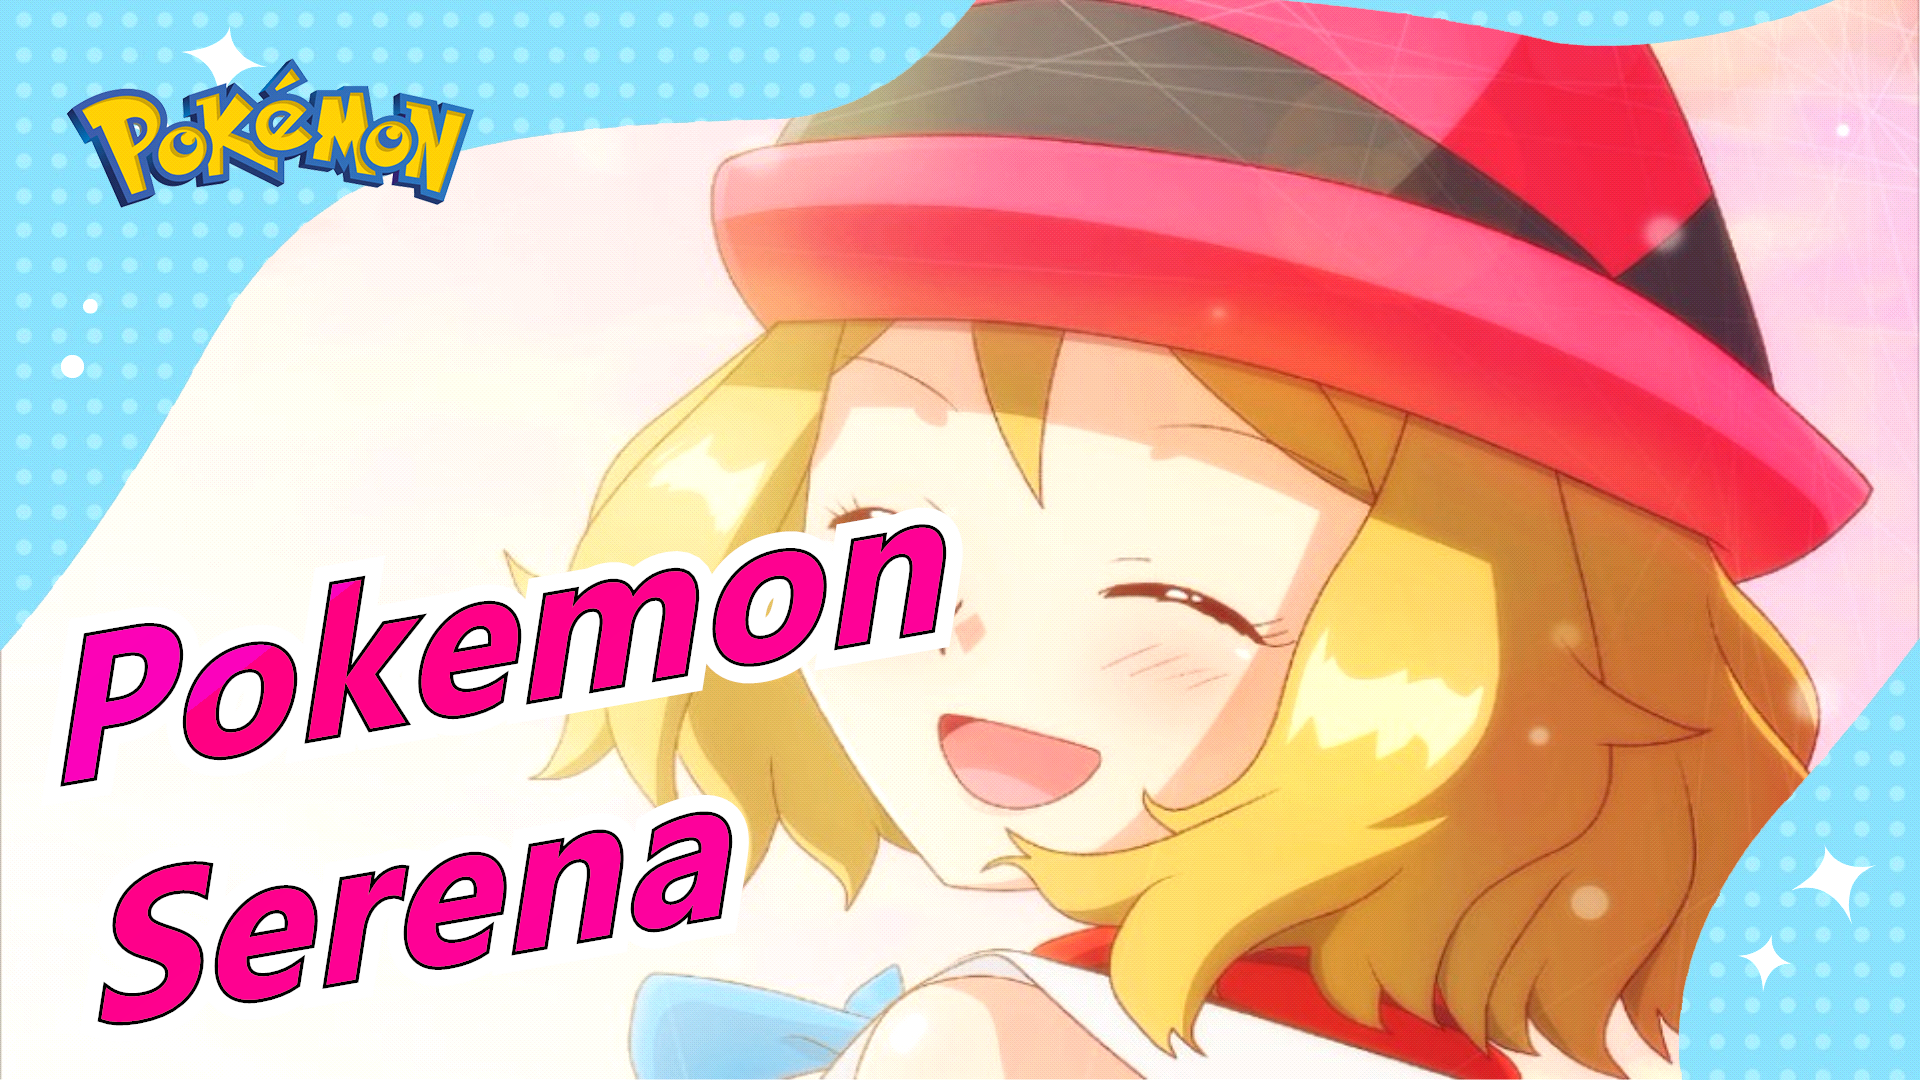 Pokemon] Serena| Hành trình trưởng thành - Bilibili